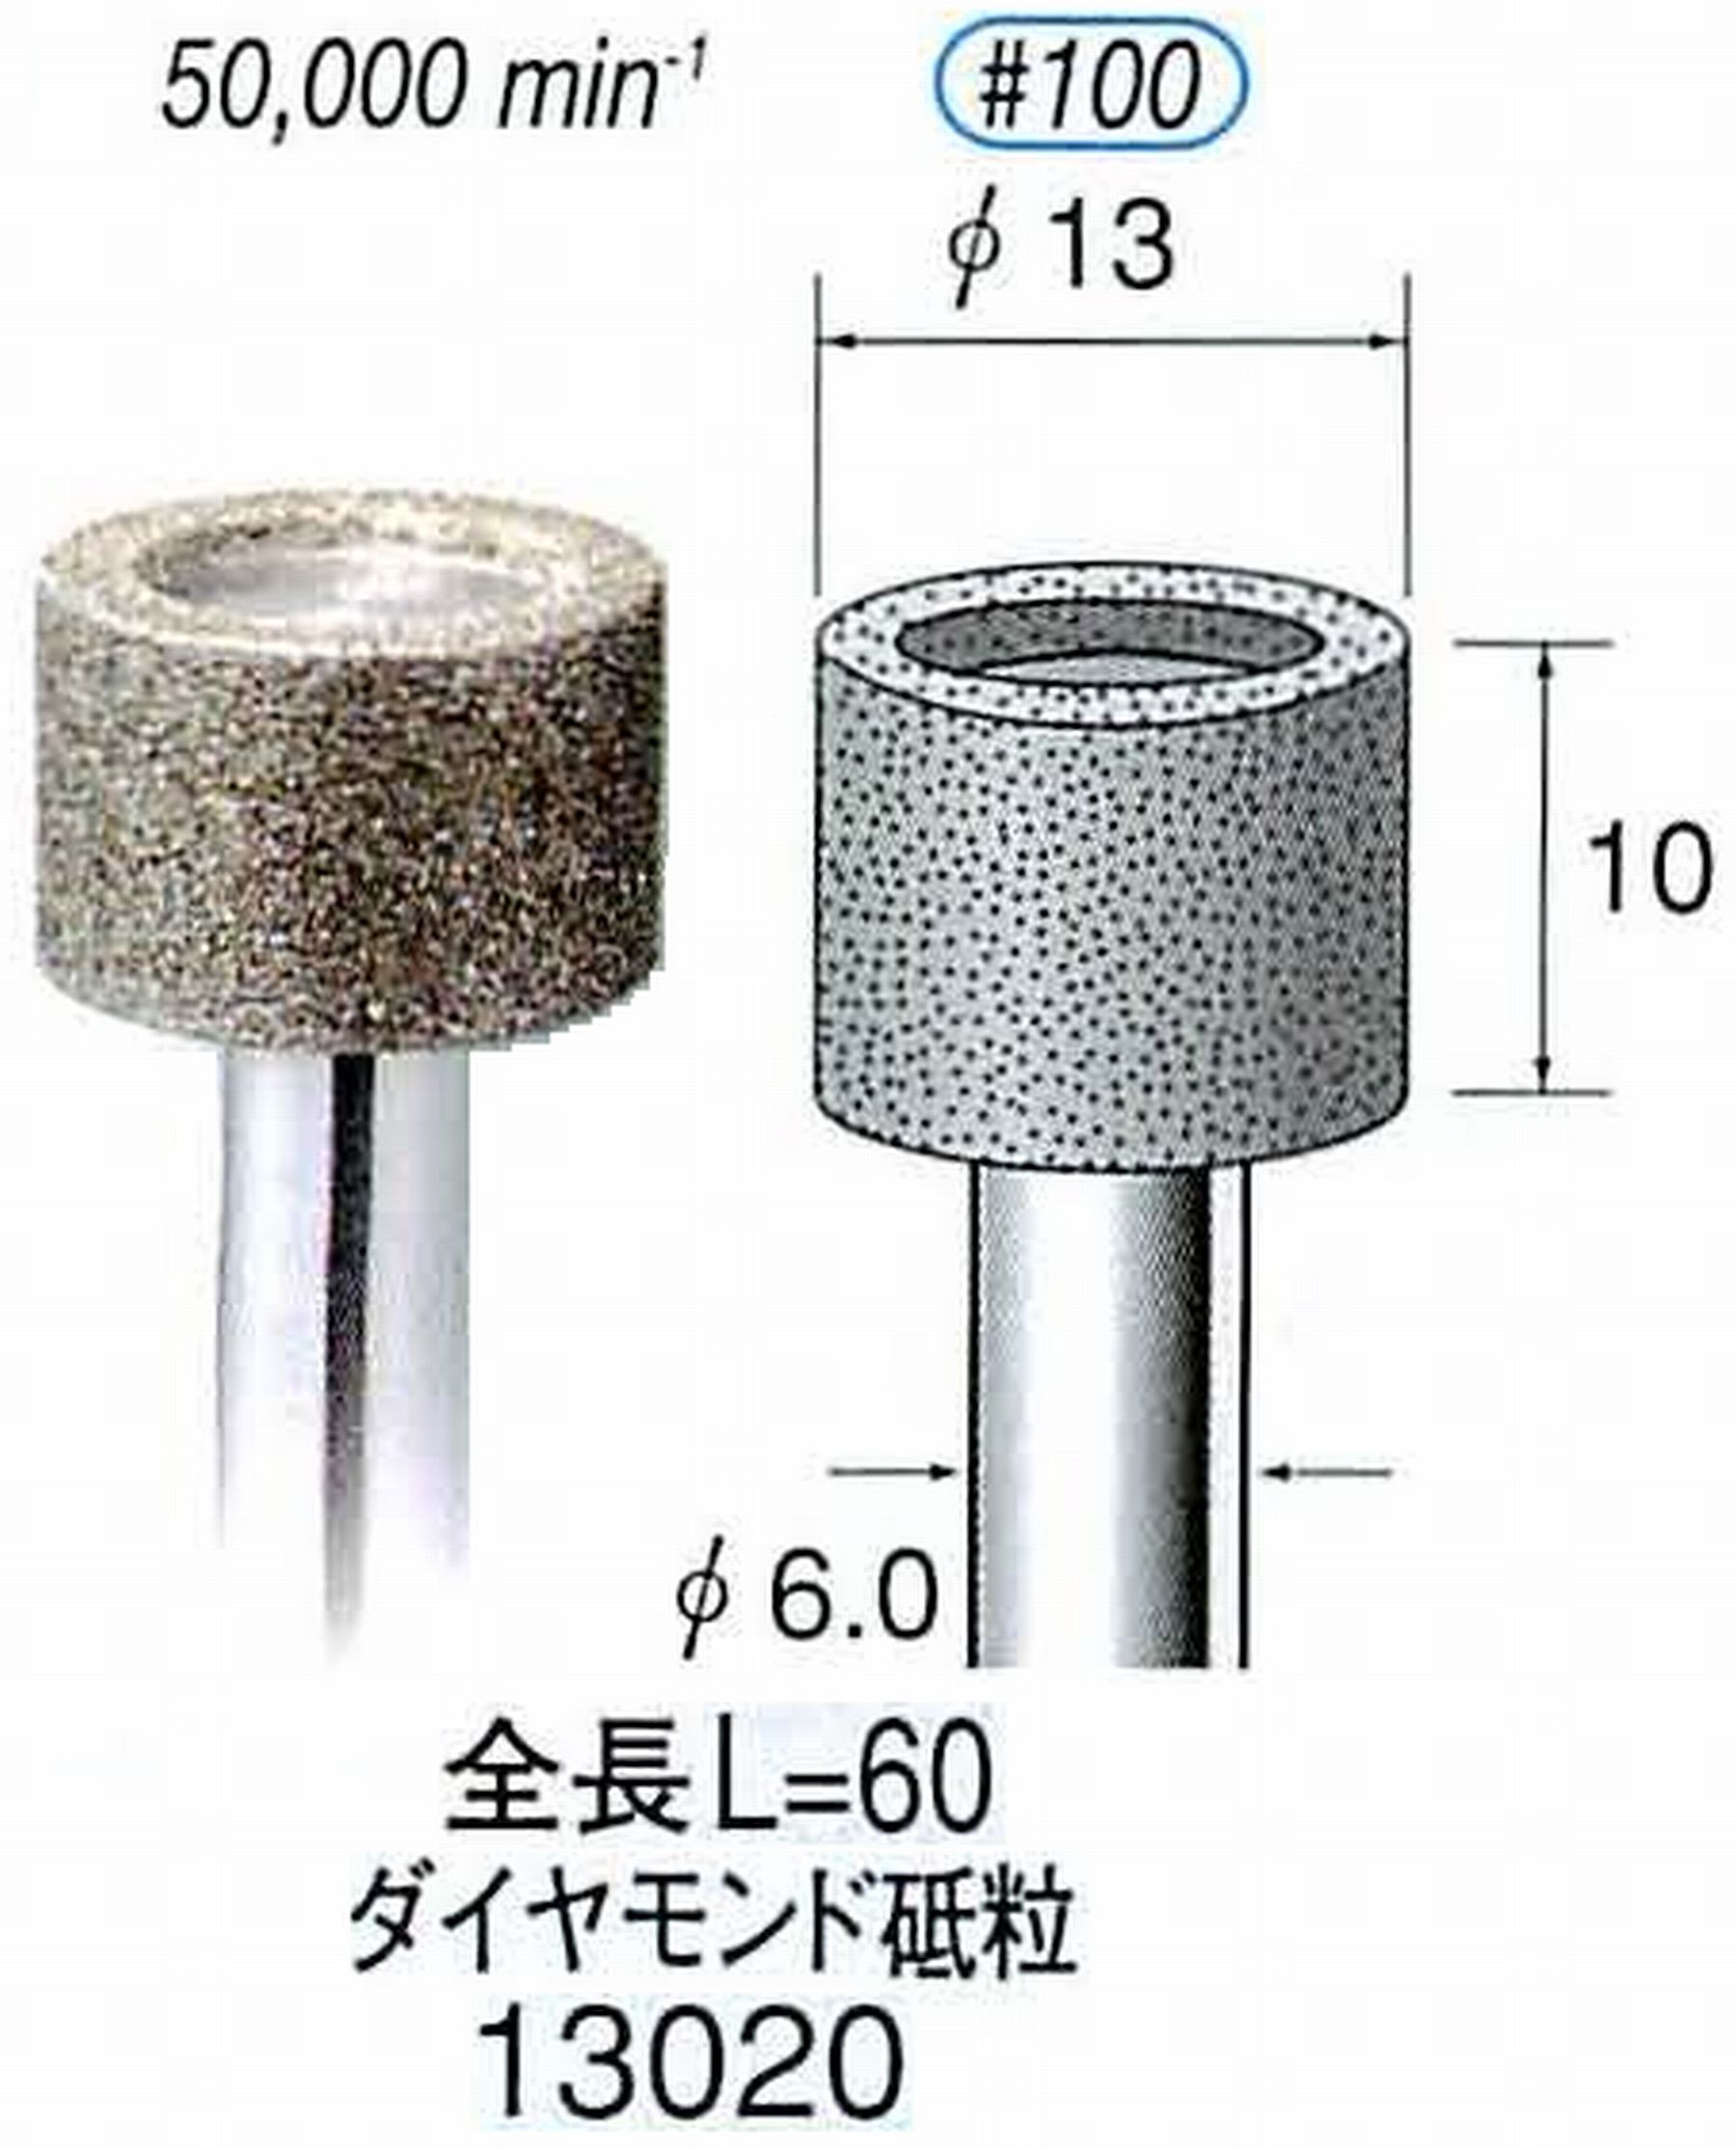 ナカニシ/NAKANISHI 電着ダイヤモンド ダイヤモンド砥粒 軸径(シャンク)φ6.0mm 13020